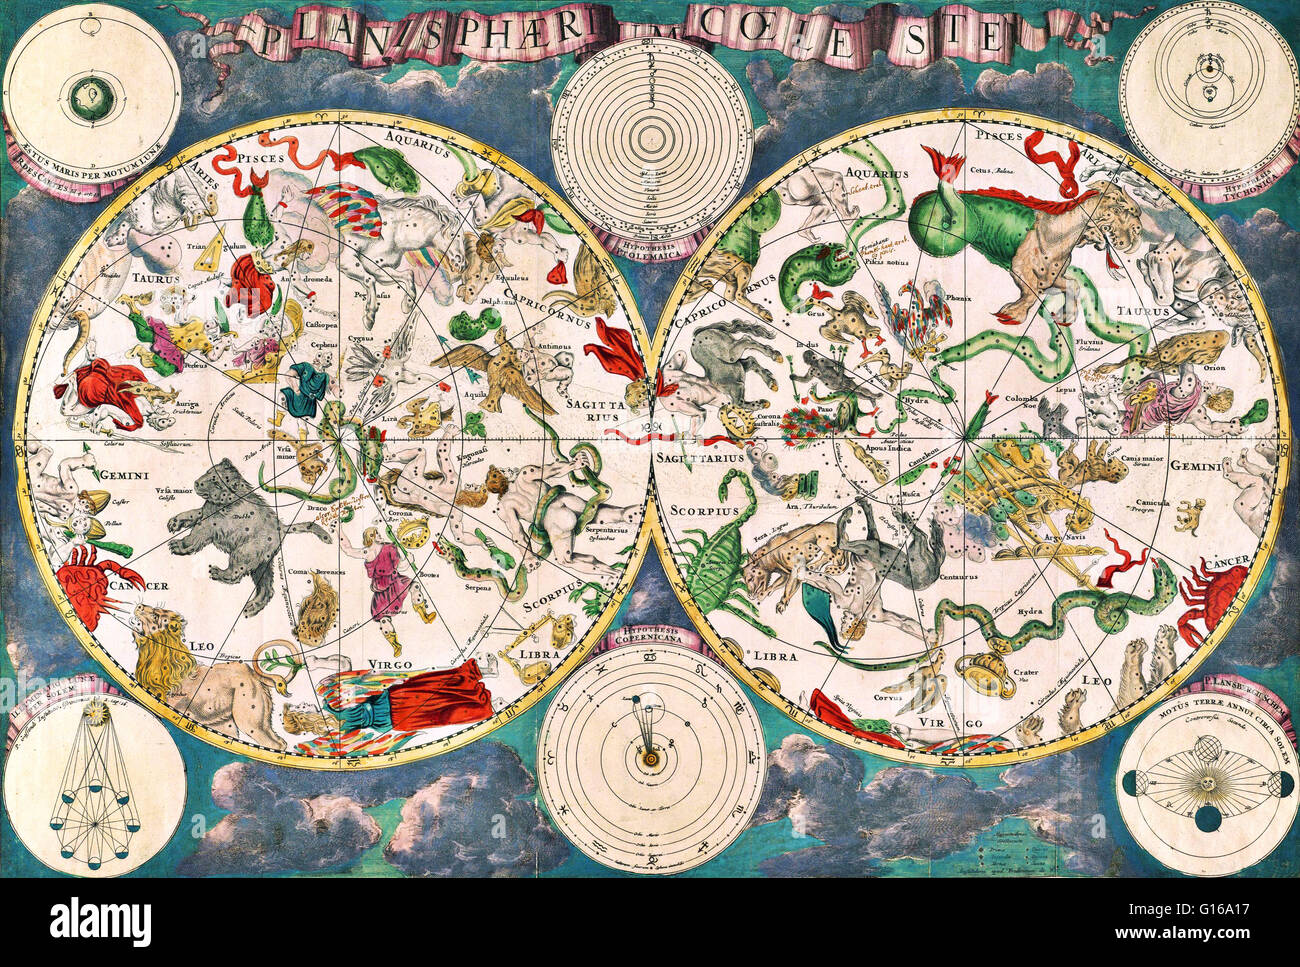 Planisphaeri Coeleste, 1680, eine himmlische Planisphere mit den Konstellationen der nördlichen und südlichen Hemisphären mit traditionellen Darstellungen von den Zeichen des Tierkreises und Konstellationen, wie Draco, Serpens und Hydra. Astronomie und ce Stockfoto